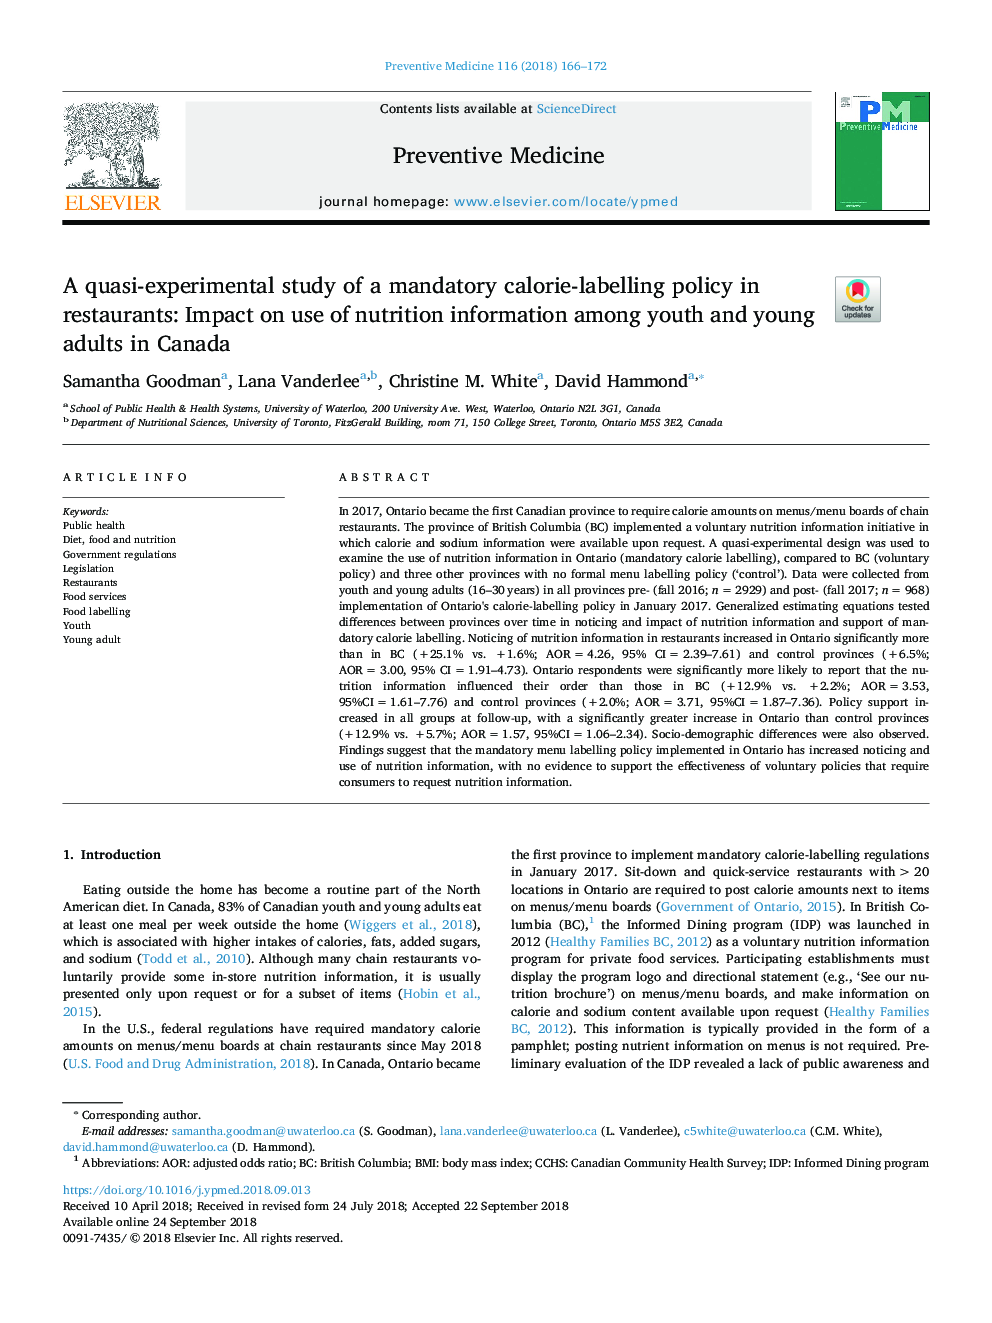 یک مطالعه شبه تجربی از یک سیاست ضروری برای کالیبراسیون در رستوران ها: تأثیر استفاده از اطلاعات تغذیه در میان جوانان و بزرگسالان جوان در کانادا